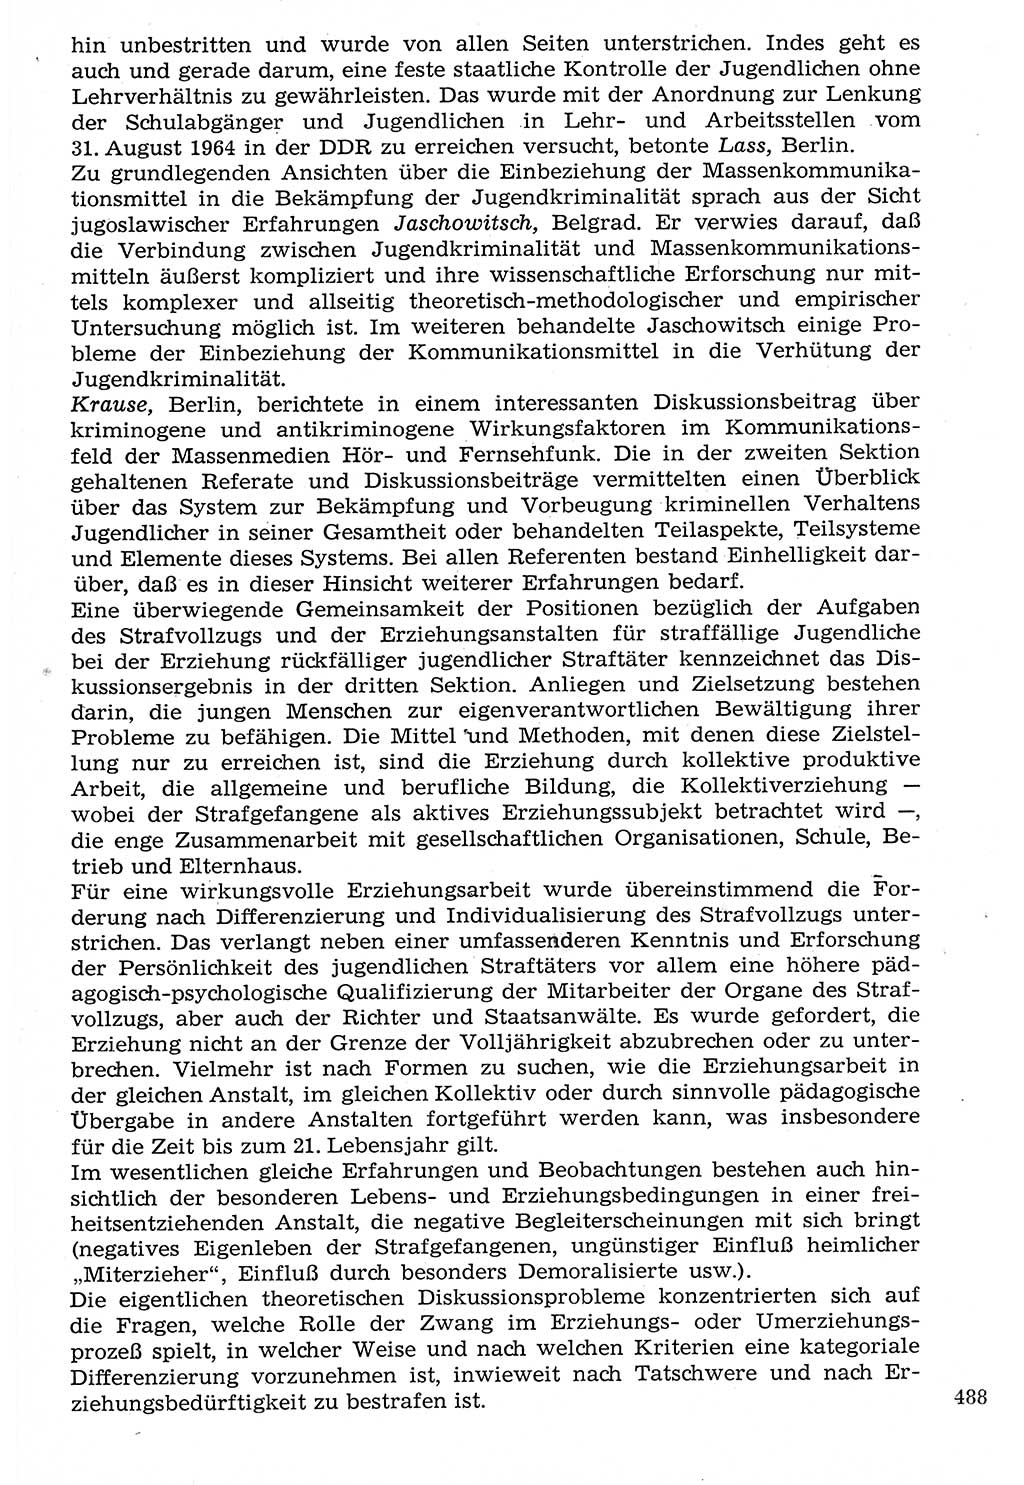 Staat und Recht (StuR), 17. Jahrgang [Deutsche Demokratische Republik (DDR)] 1968, Seite 488 (StuR DDR 1968, S. 488)